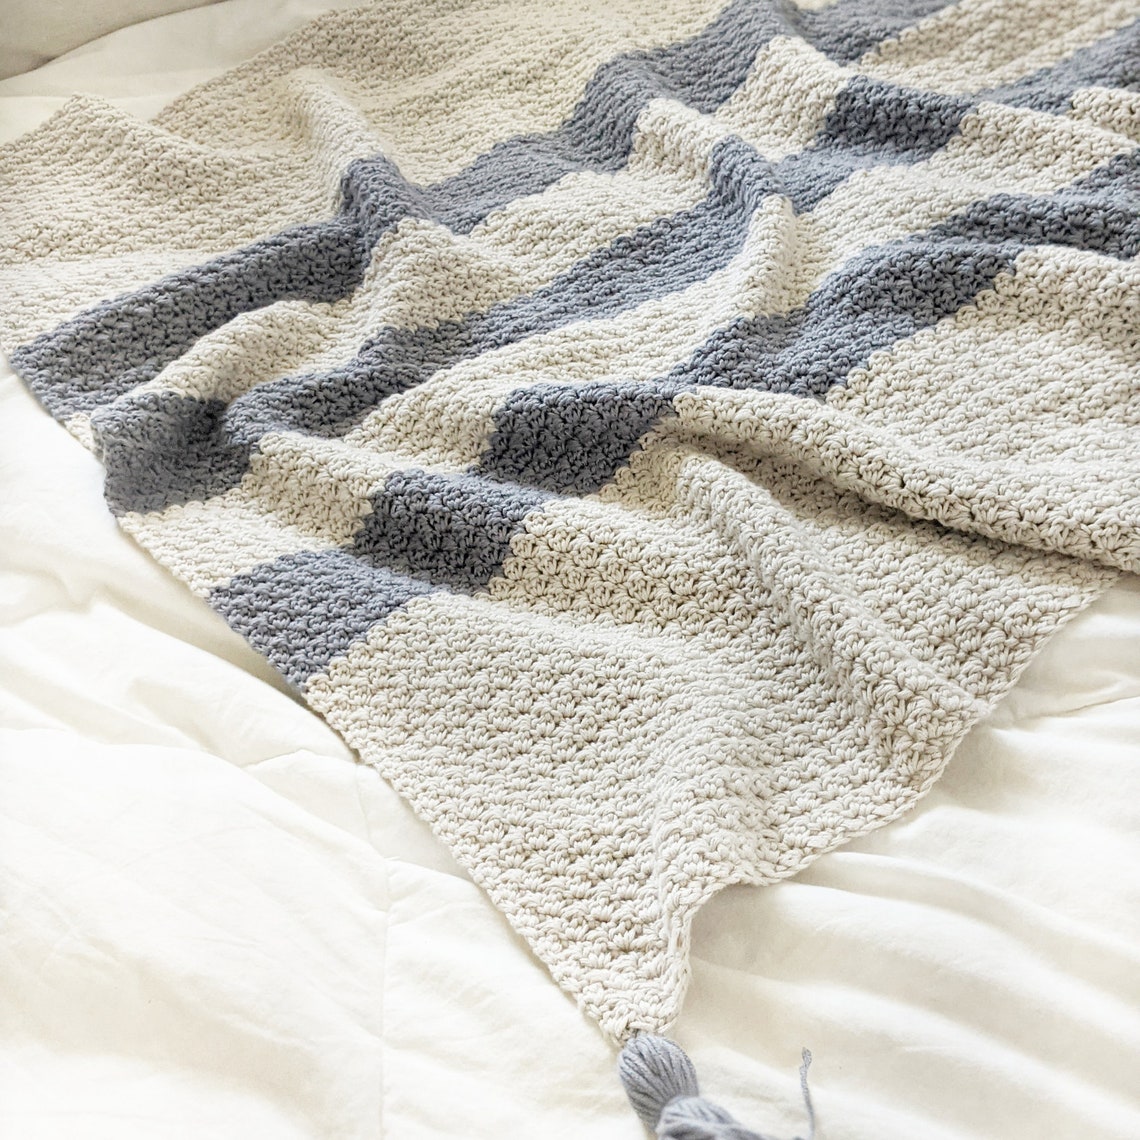 CROCHET PATTERN Crochet Baby Blanket Pattern Easy Crochet | Etsy